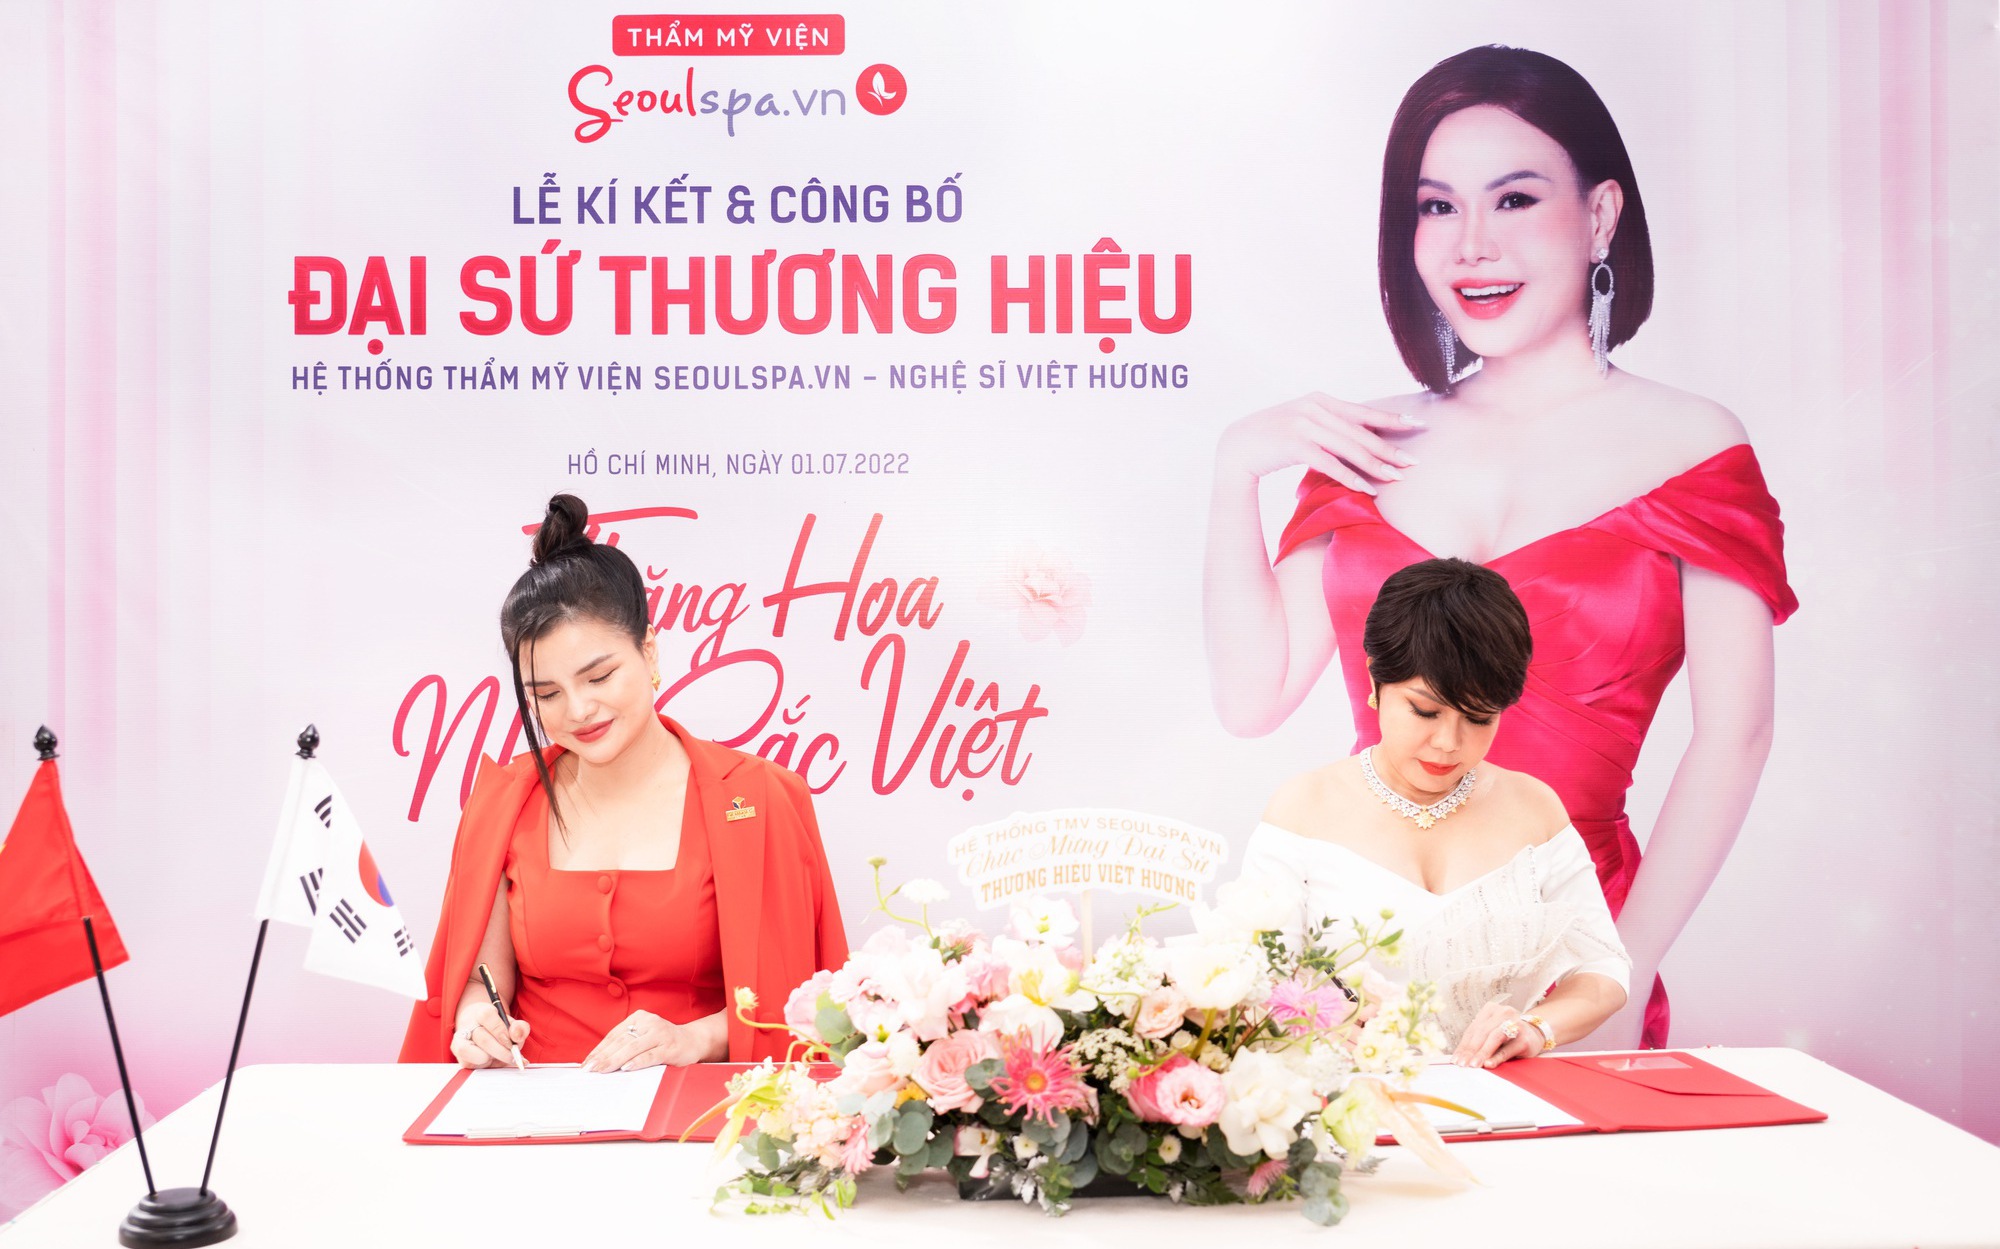 Ra mắt phim “Xóm Chùa”, Việt Hương tiết lộ lý do trở thành Đại sứ thương hiệu Thẩm mỹ viện SeoulSpa